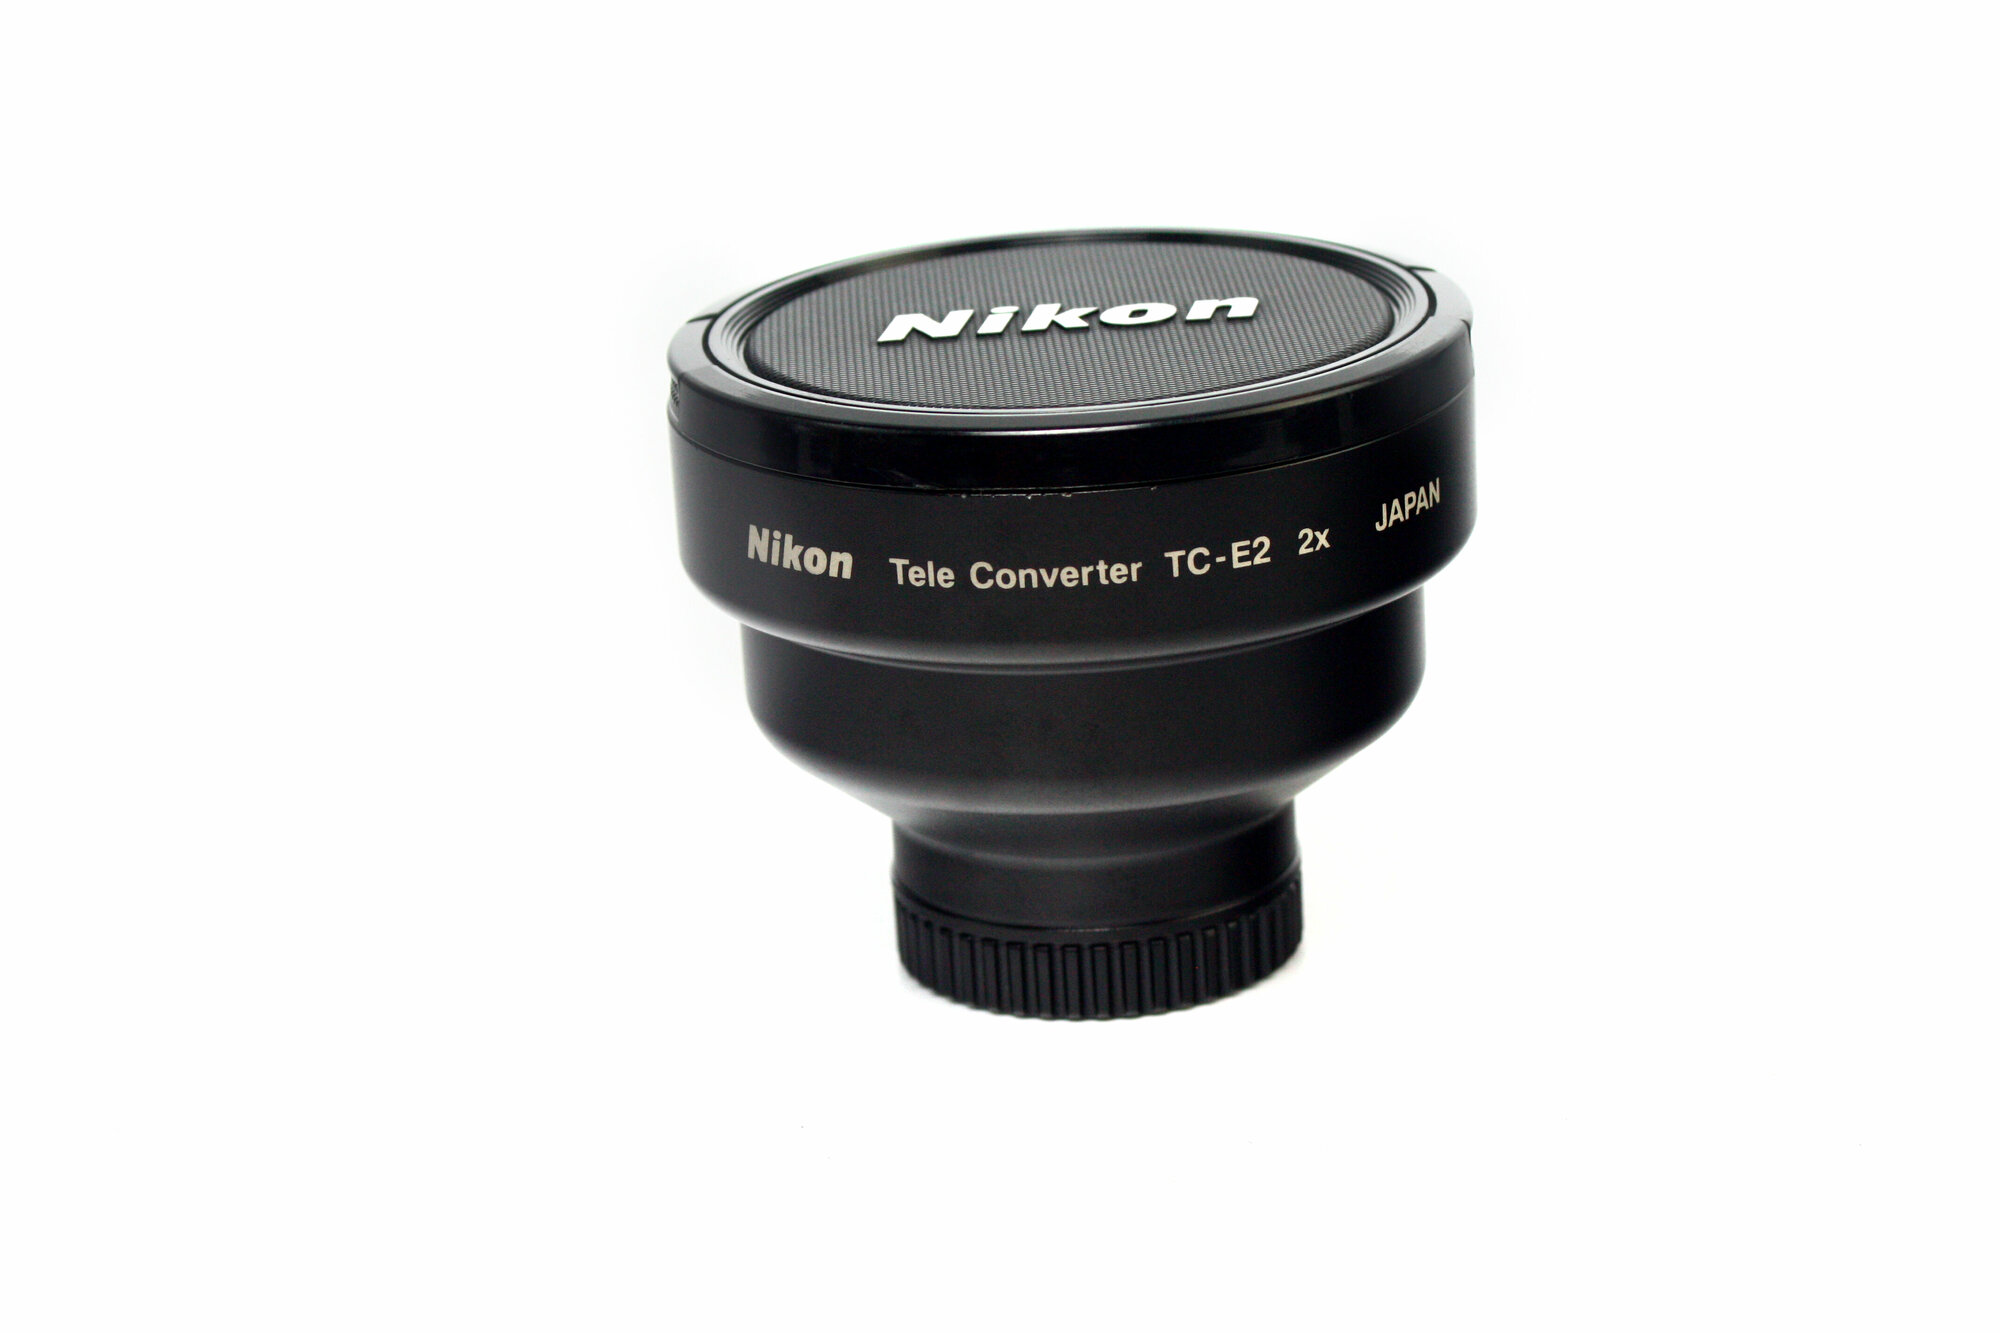 Nikon Tele Converter TC-E2 2x